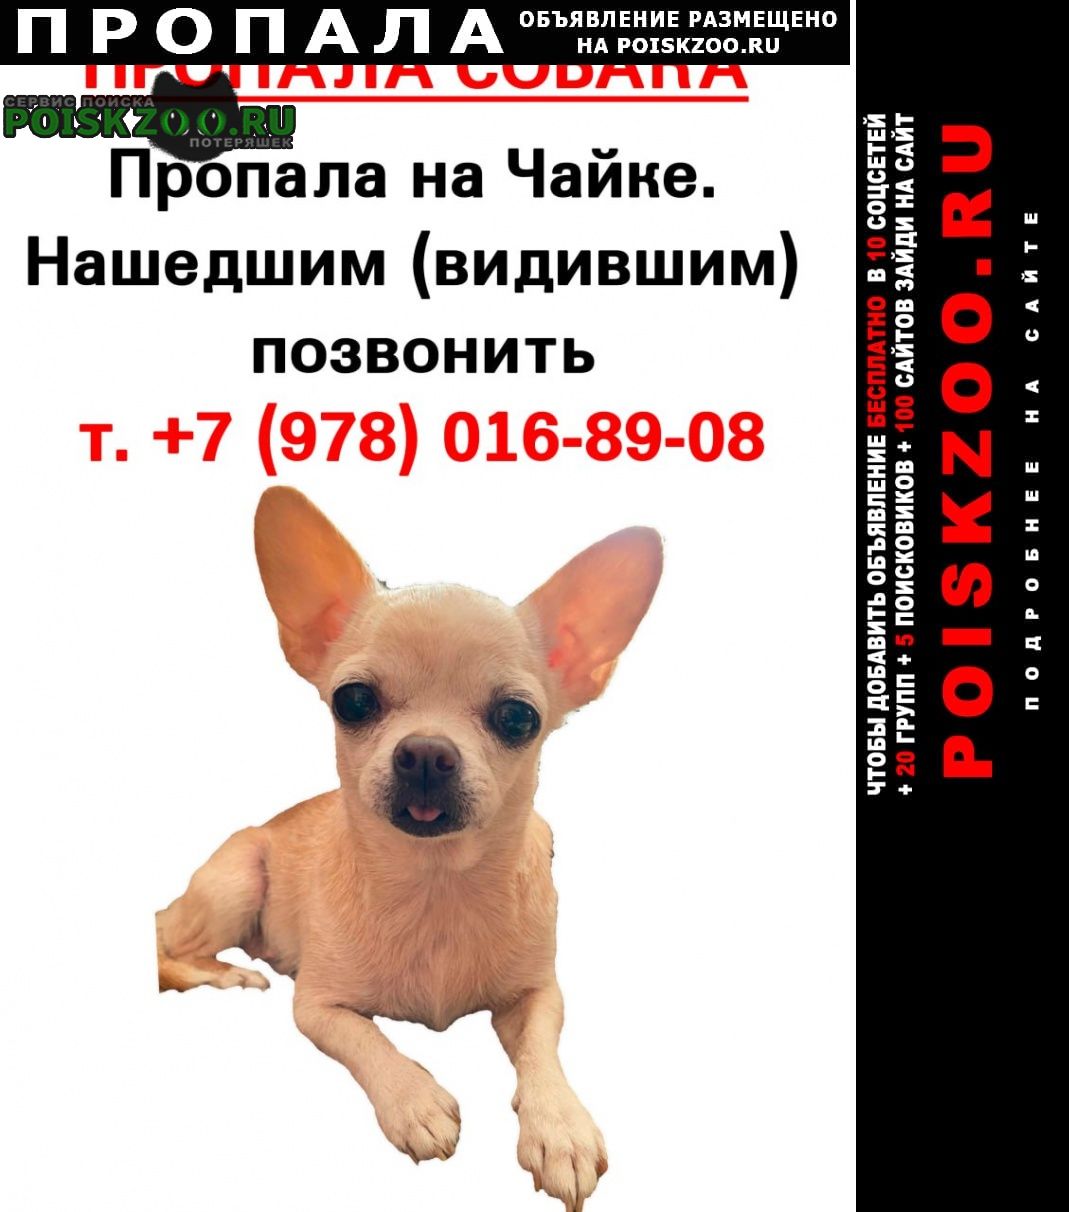 Севастополь Пропала собака девочка. отблагодарю по человечески